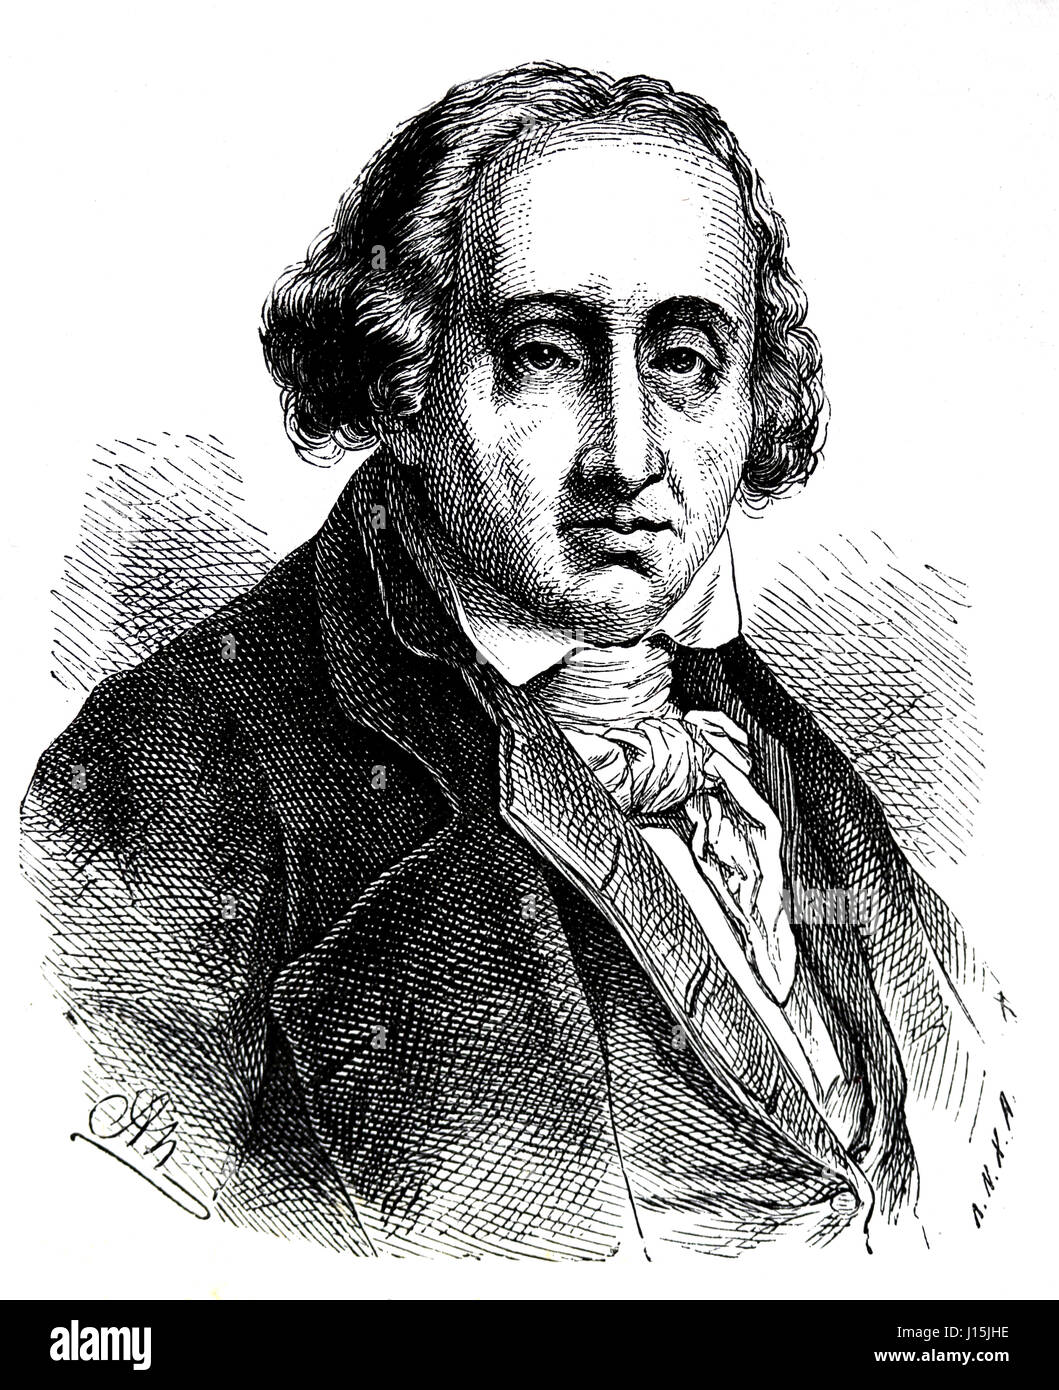 José María Jacquard (1752-1834). Mercante Francesa. Inventor del telar programable. Grabado, nuestro siglo, 1883. Foto de stock